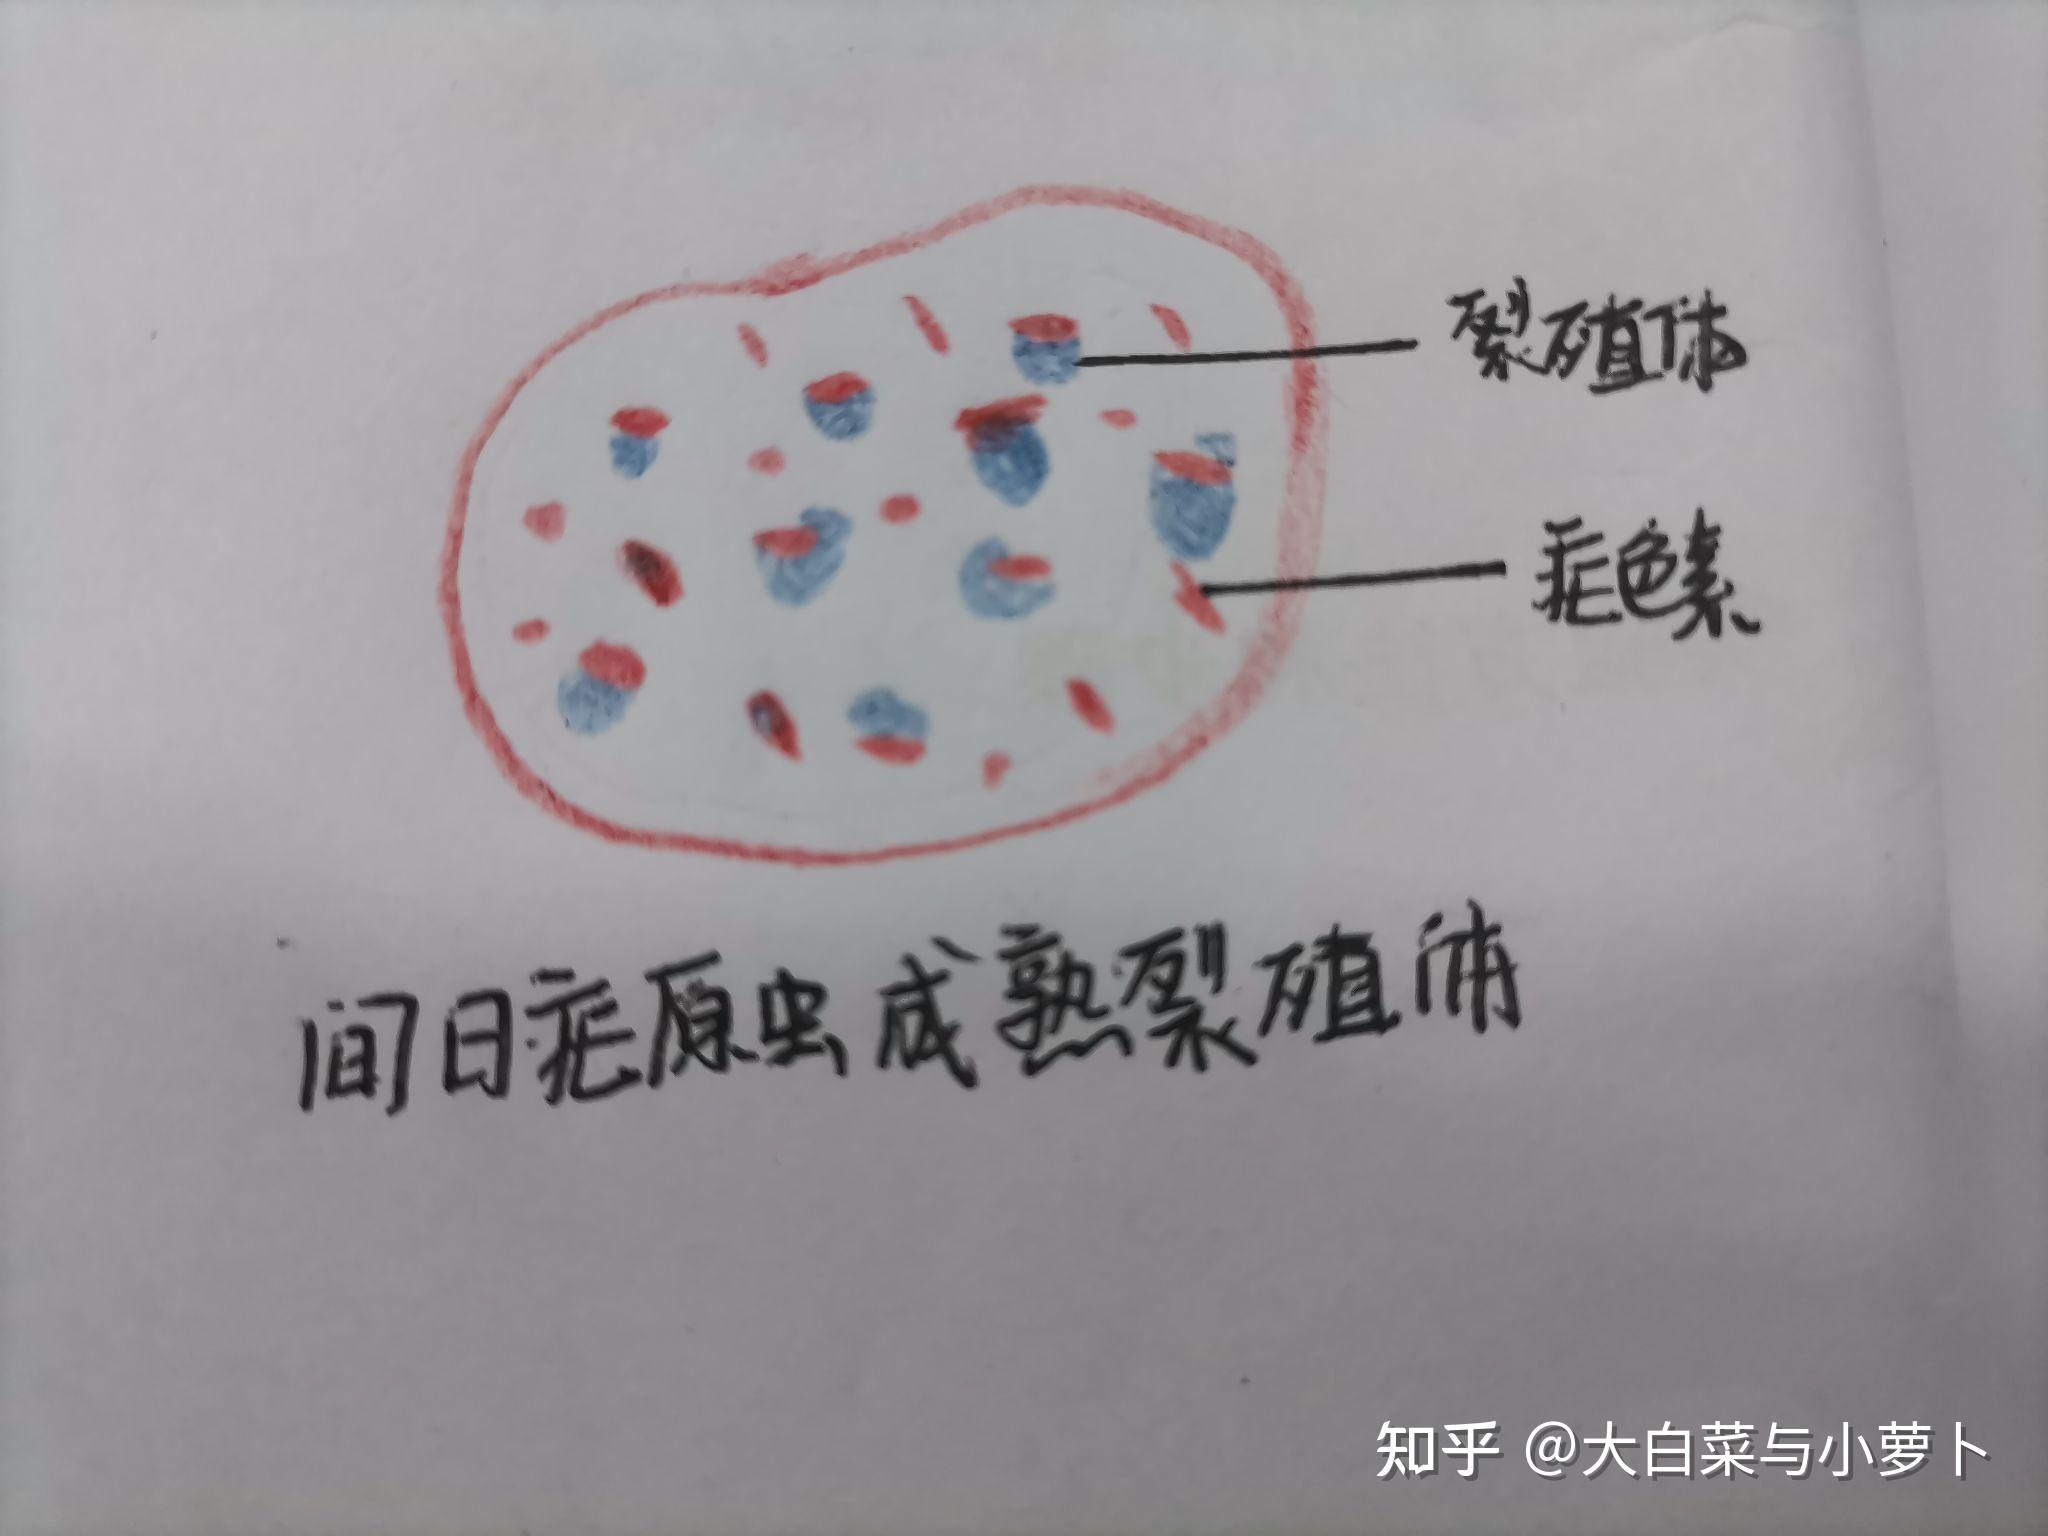 疟原虫红蓝铅笔图图片